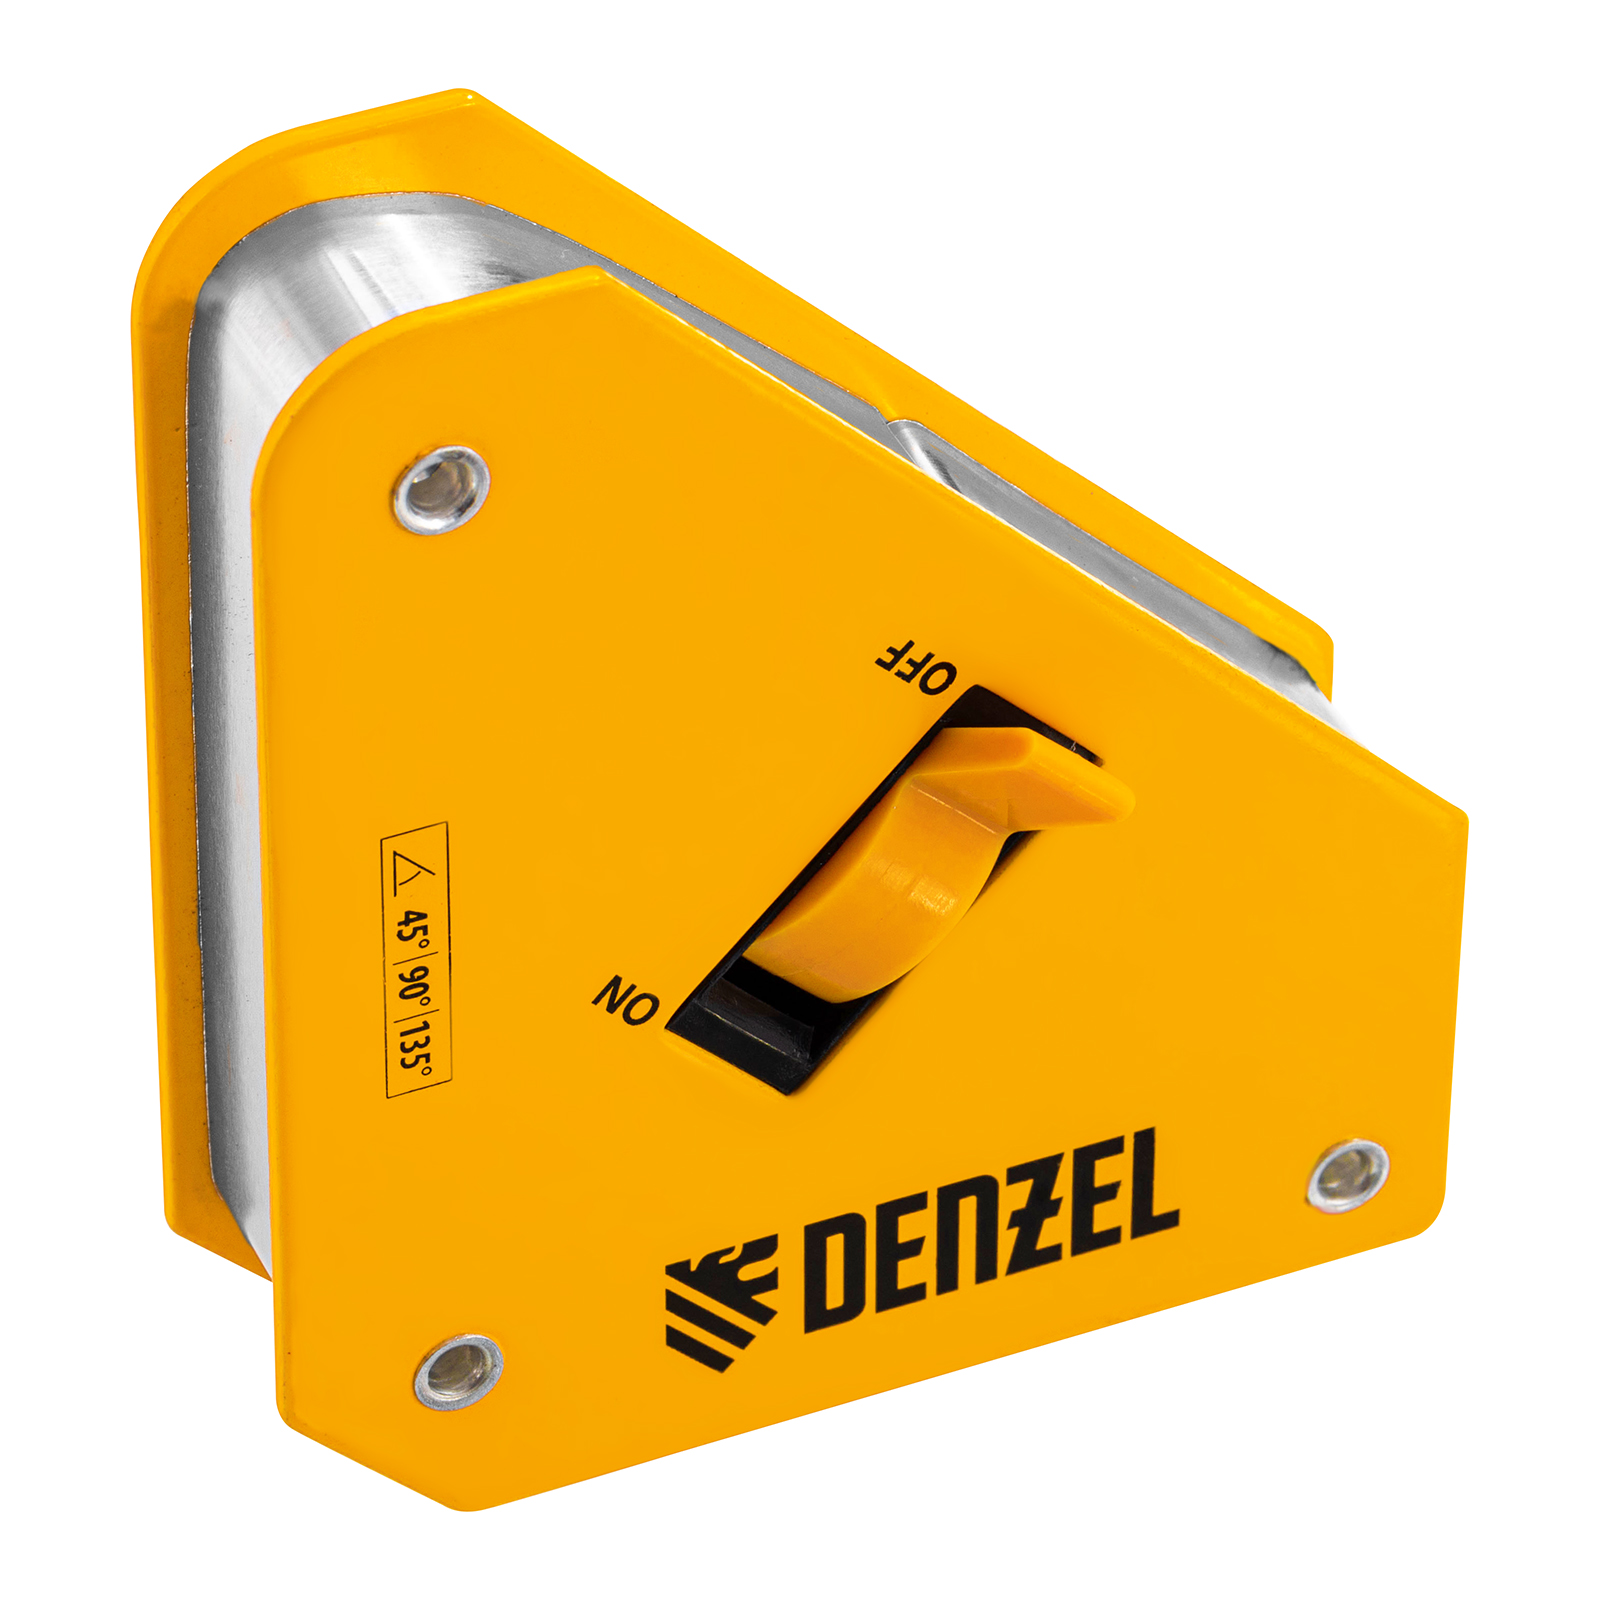 Фиксатор магнитный отключаемый для сварочных работ DENZEL усилие 30 LB, 45х90 град. 97561 фиксатор магнитный регулируемый для сварочных работ denzel усилие 50 lb 97565